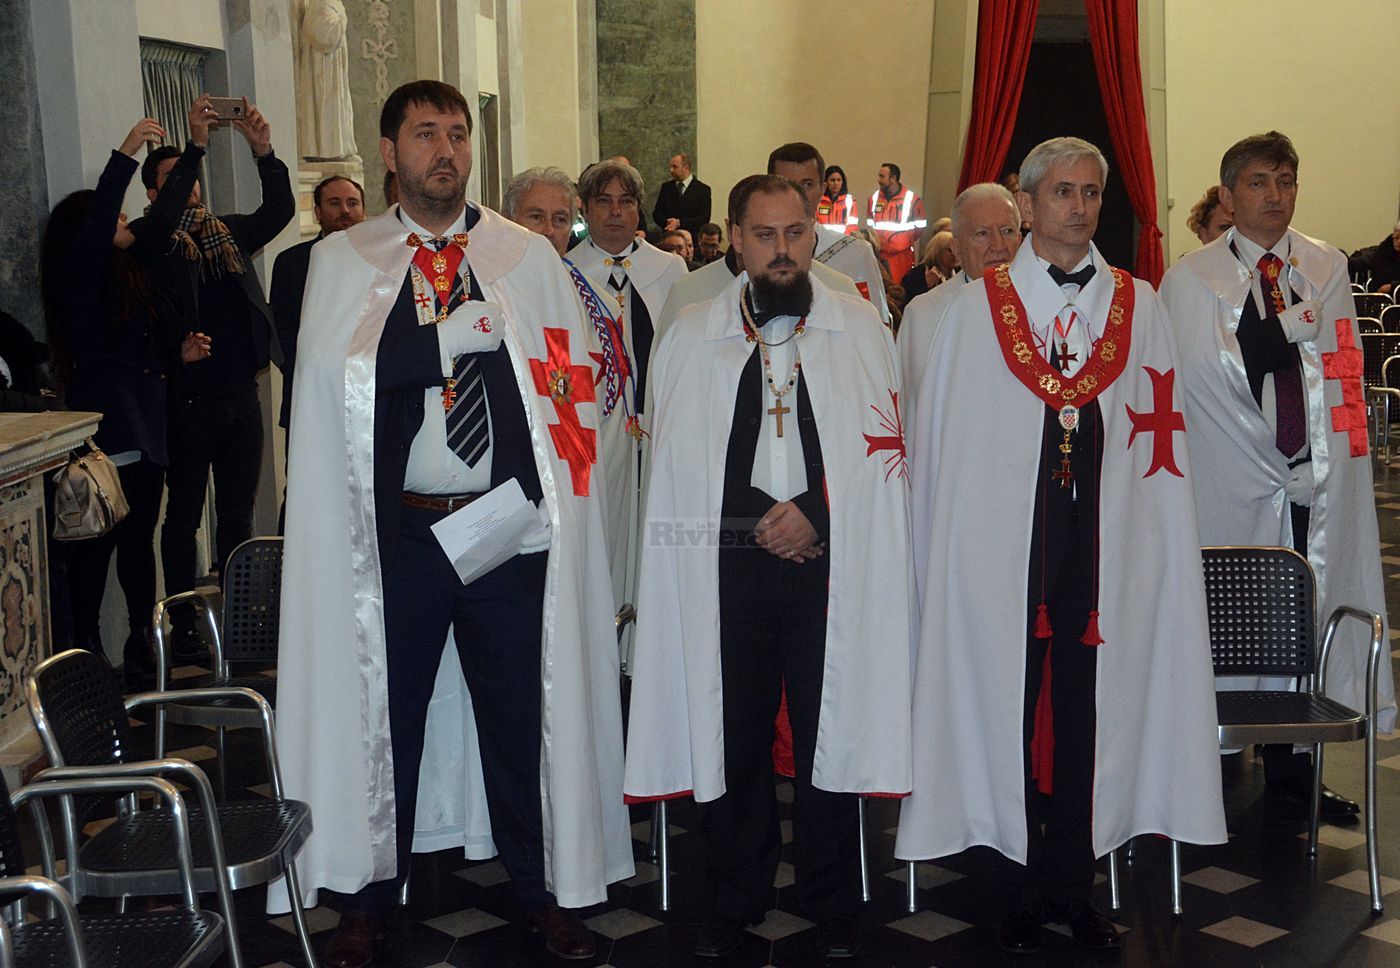 Cavalieri Templari ex chiesa San Francesco Ventimiglia 1 dicembre 2018_31